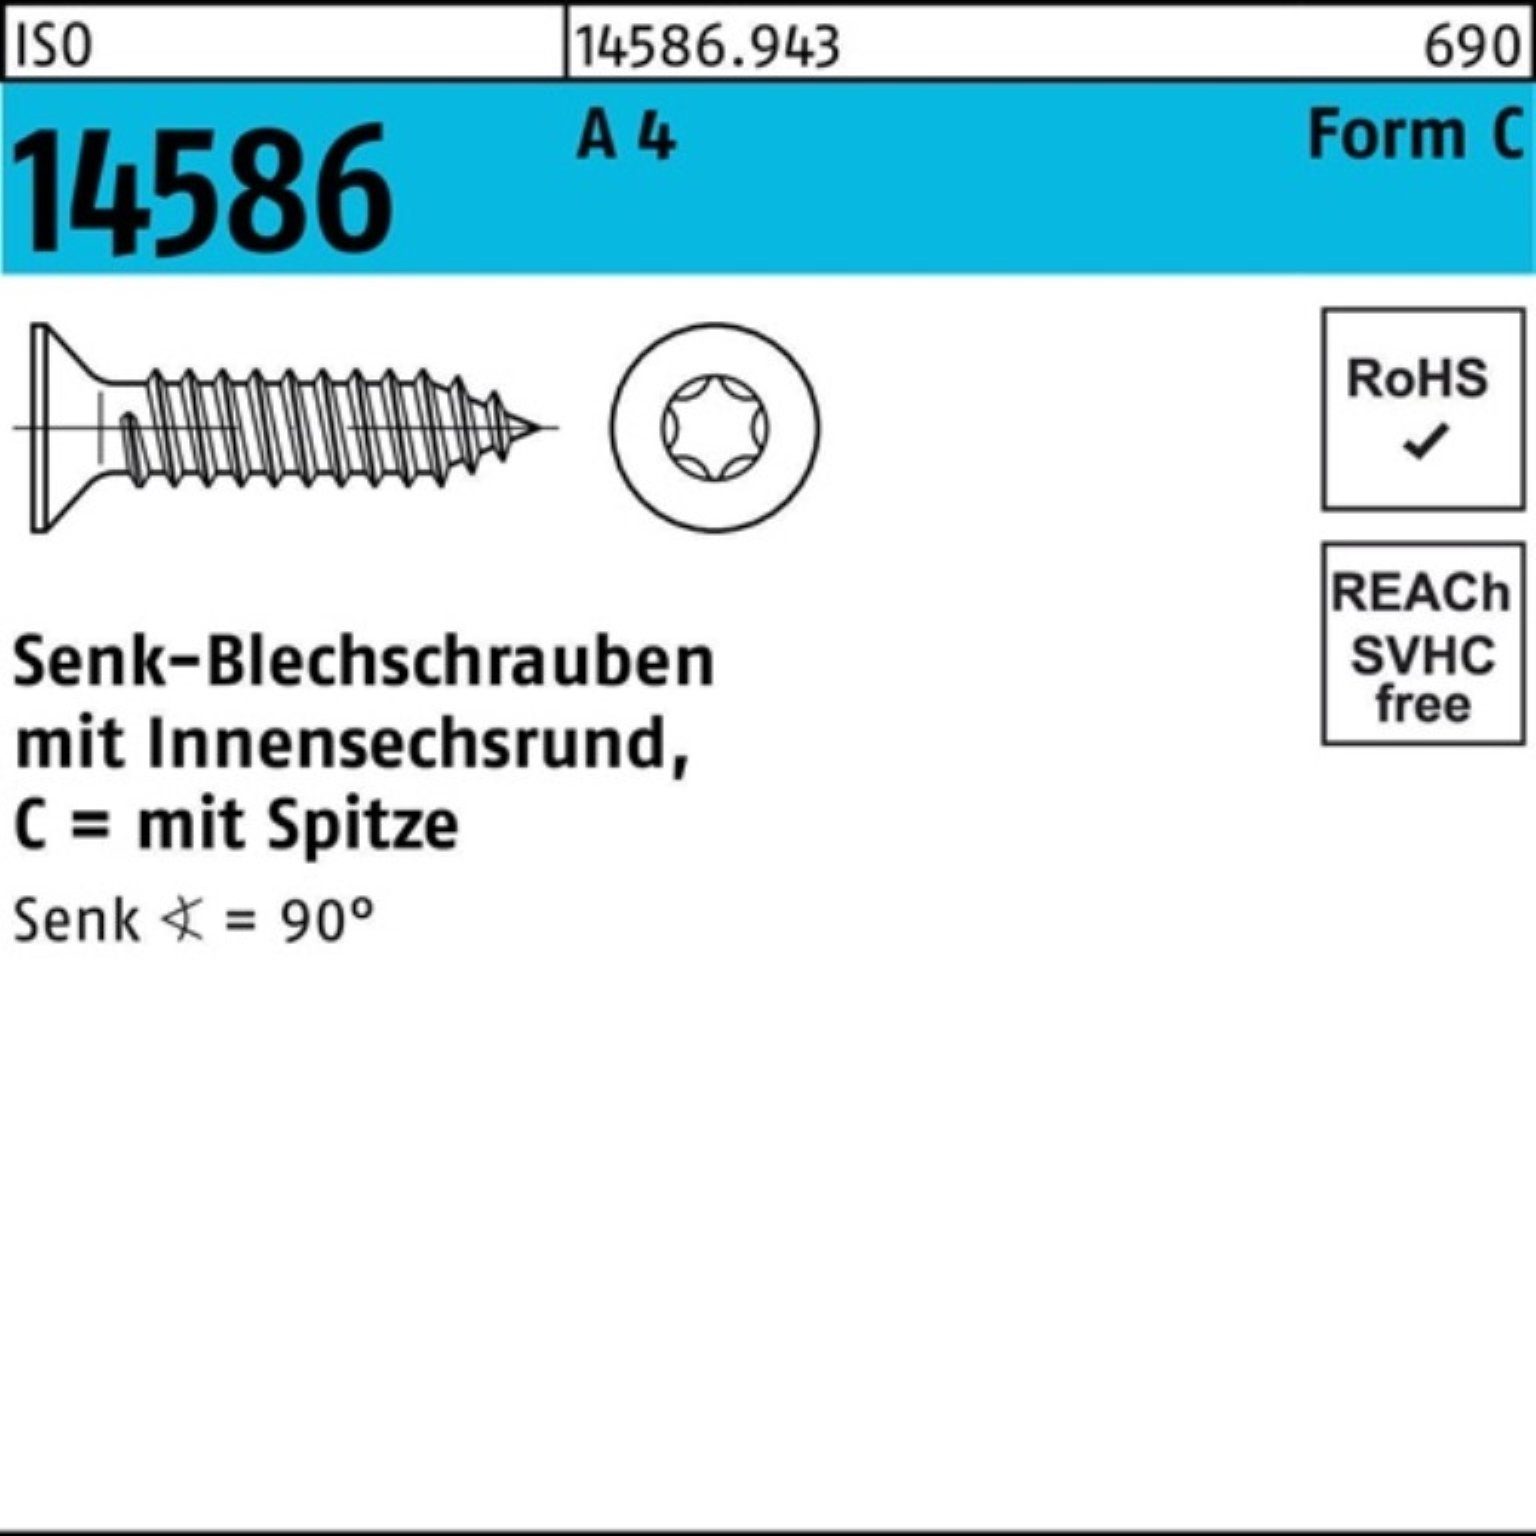 1000er Senkblechschraube 100 Pack 4 22-T10 A Schraube 14586 2,9x ISO ISR/Spitze Reyher